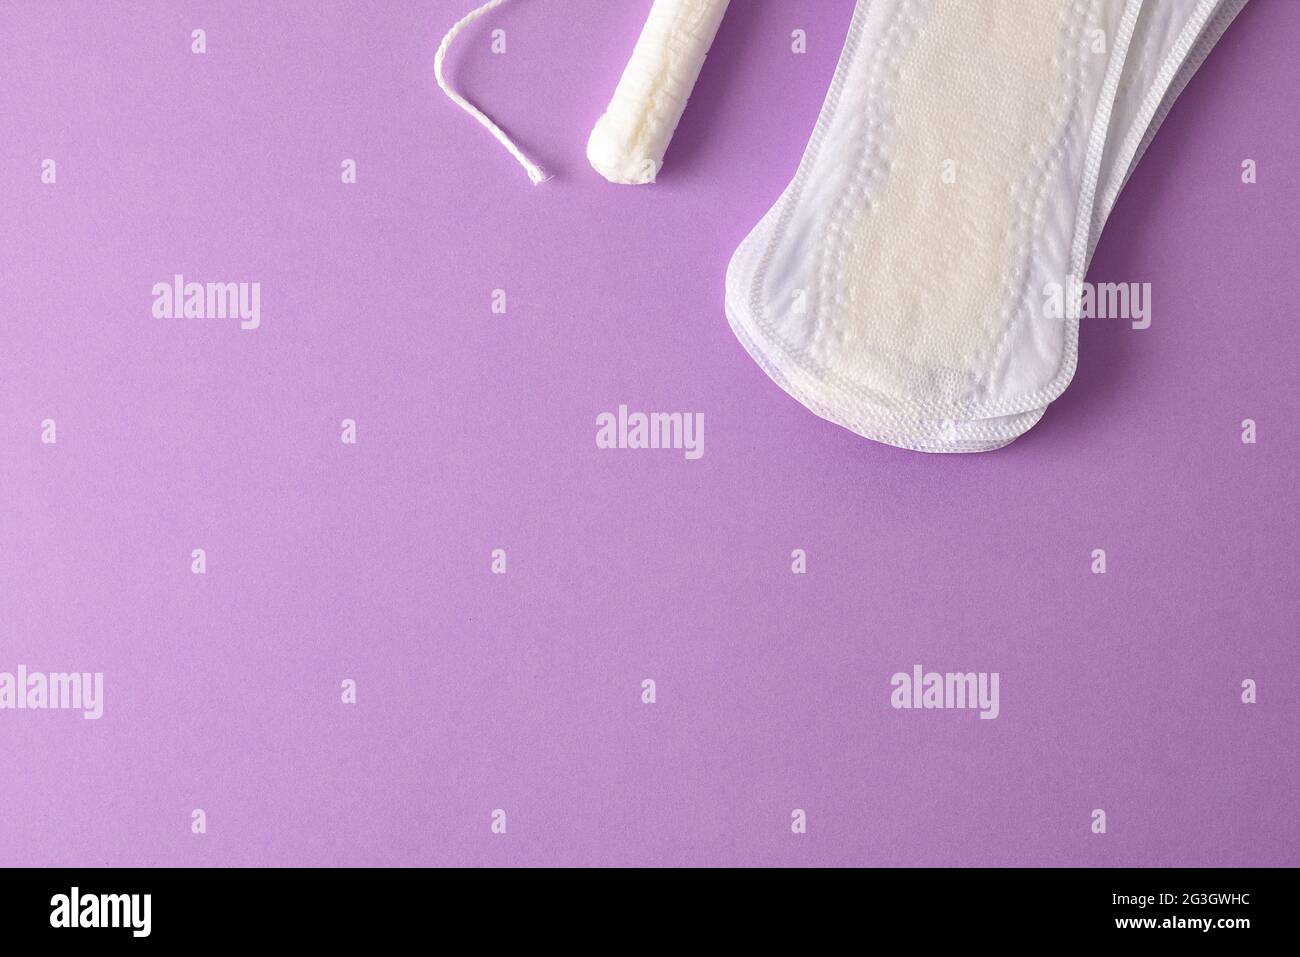 Hintergrund mit weiblichen Protektoren für den Menstruationszyklus auf lilafarbischem Hintergrund. Draufsicht. Horizontale Zusammensetzung. Stockfoto